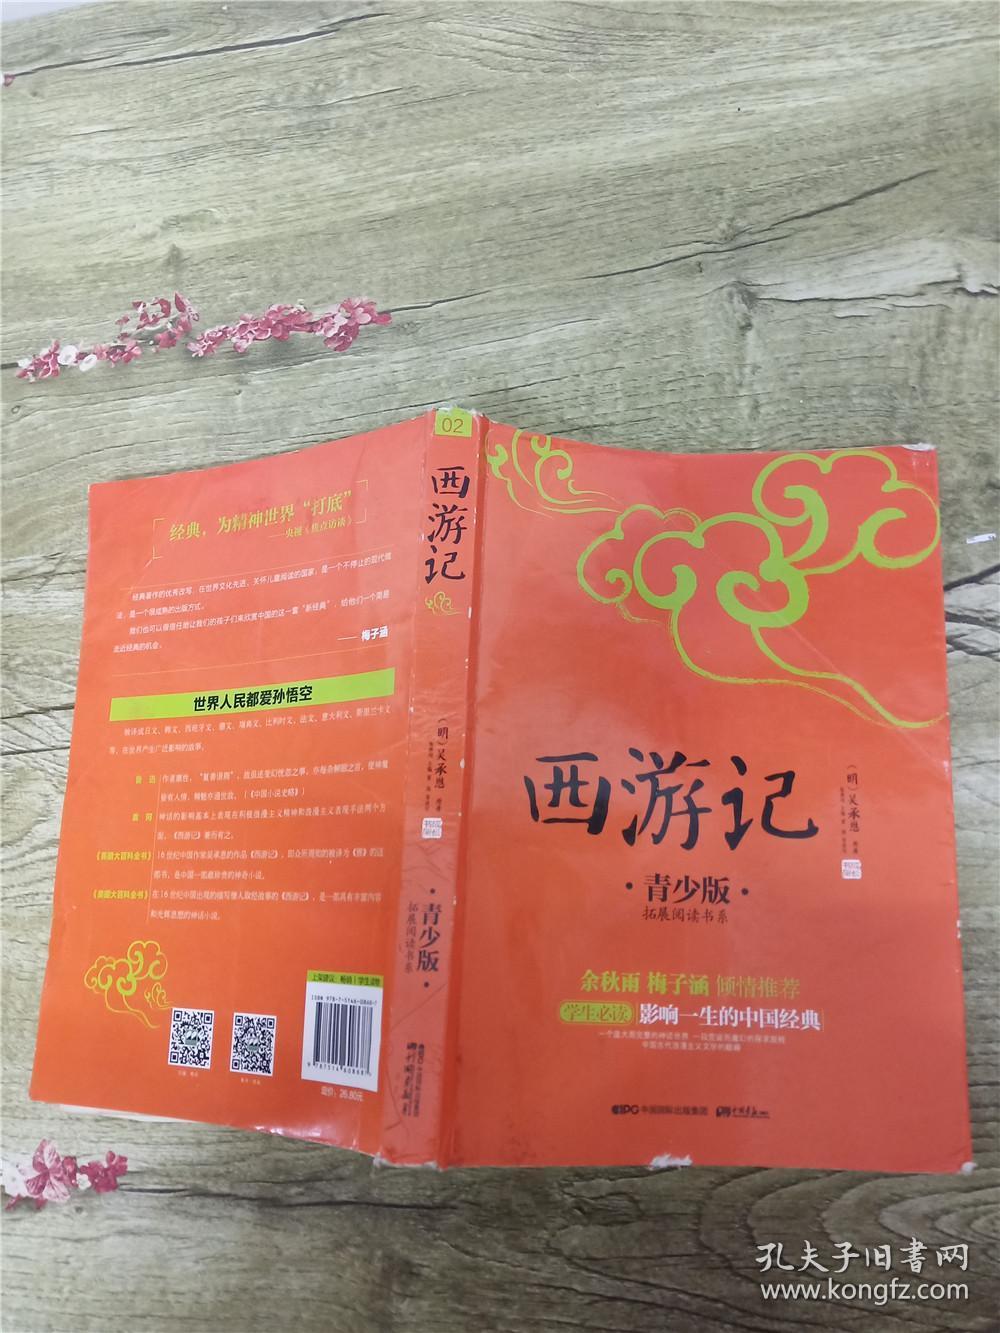 西游记 青少版 中国书店出版社【封面受损】